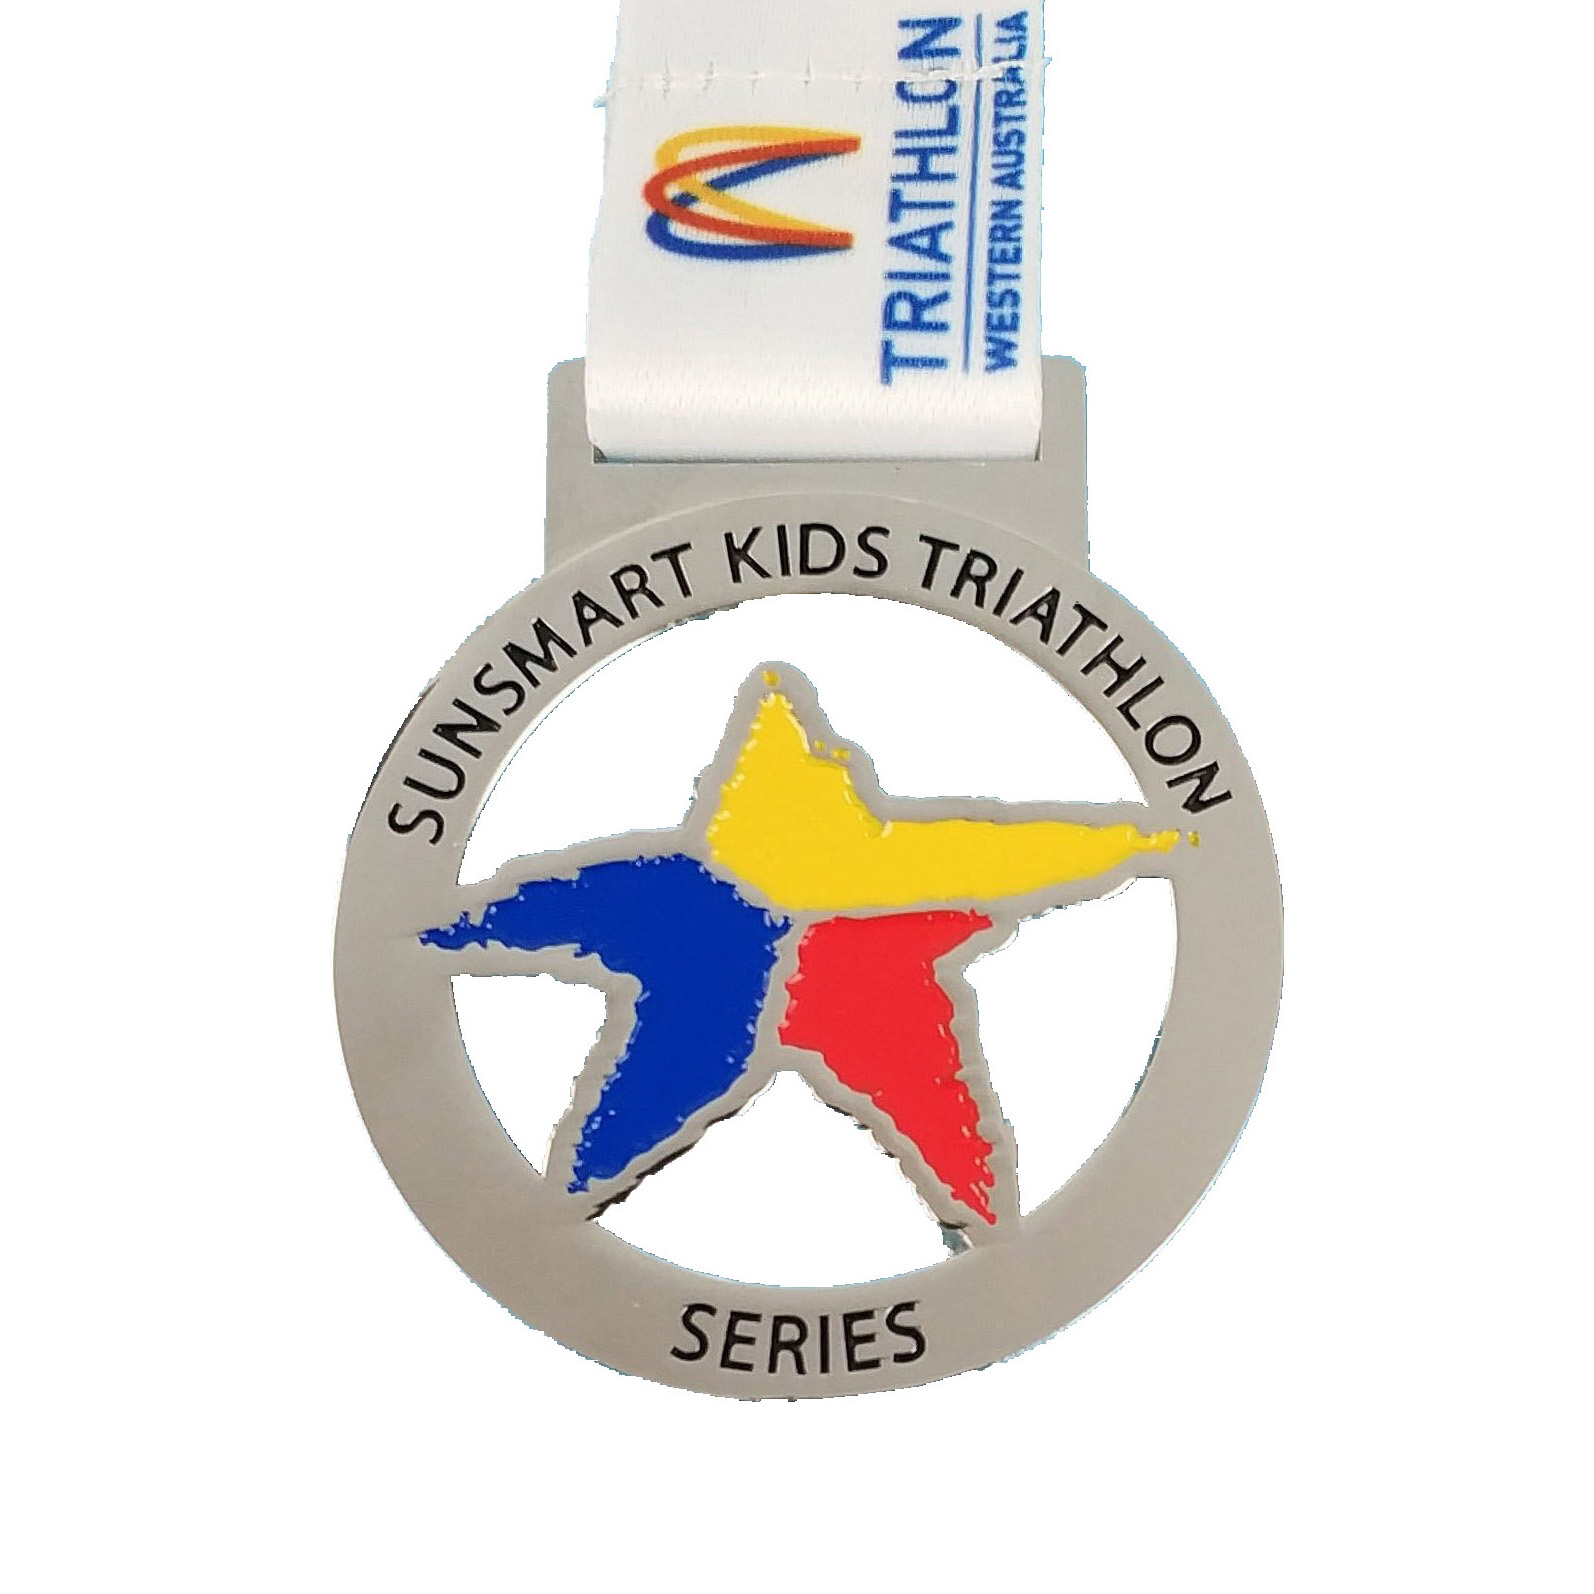 Series Medal kanggo Kids Triathlon